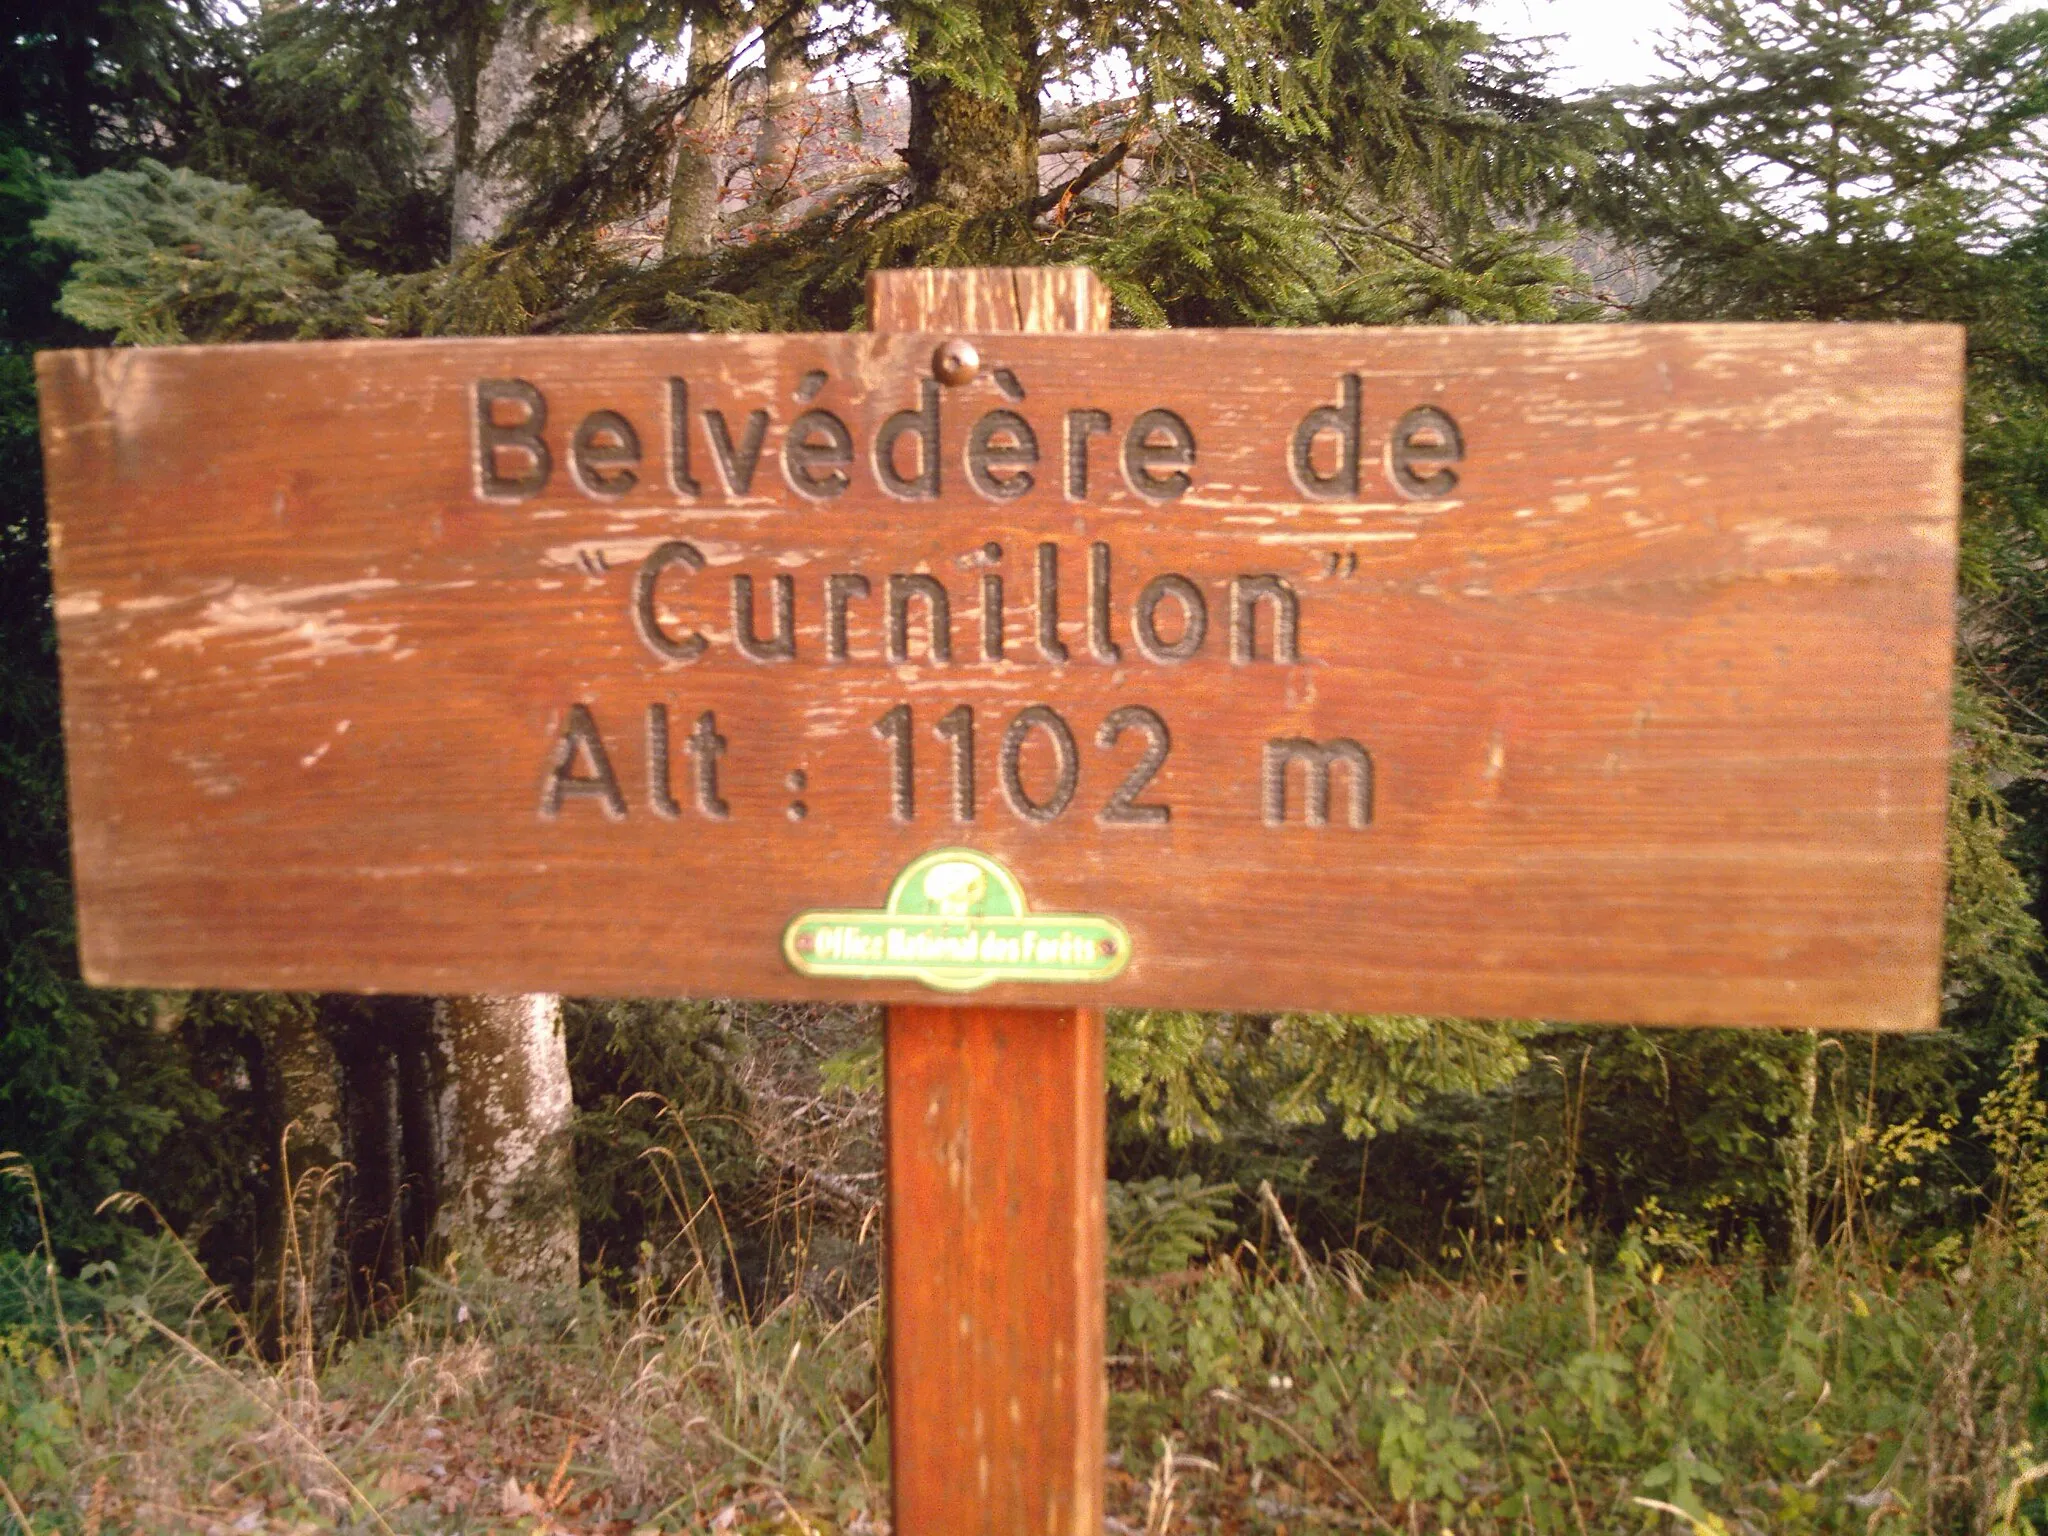 Photo showing: Panneau marquant le belvédère du Curnillon, situé à 1102 mètres d'altitude.